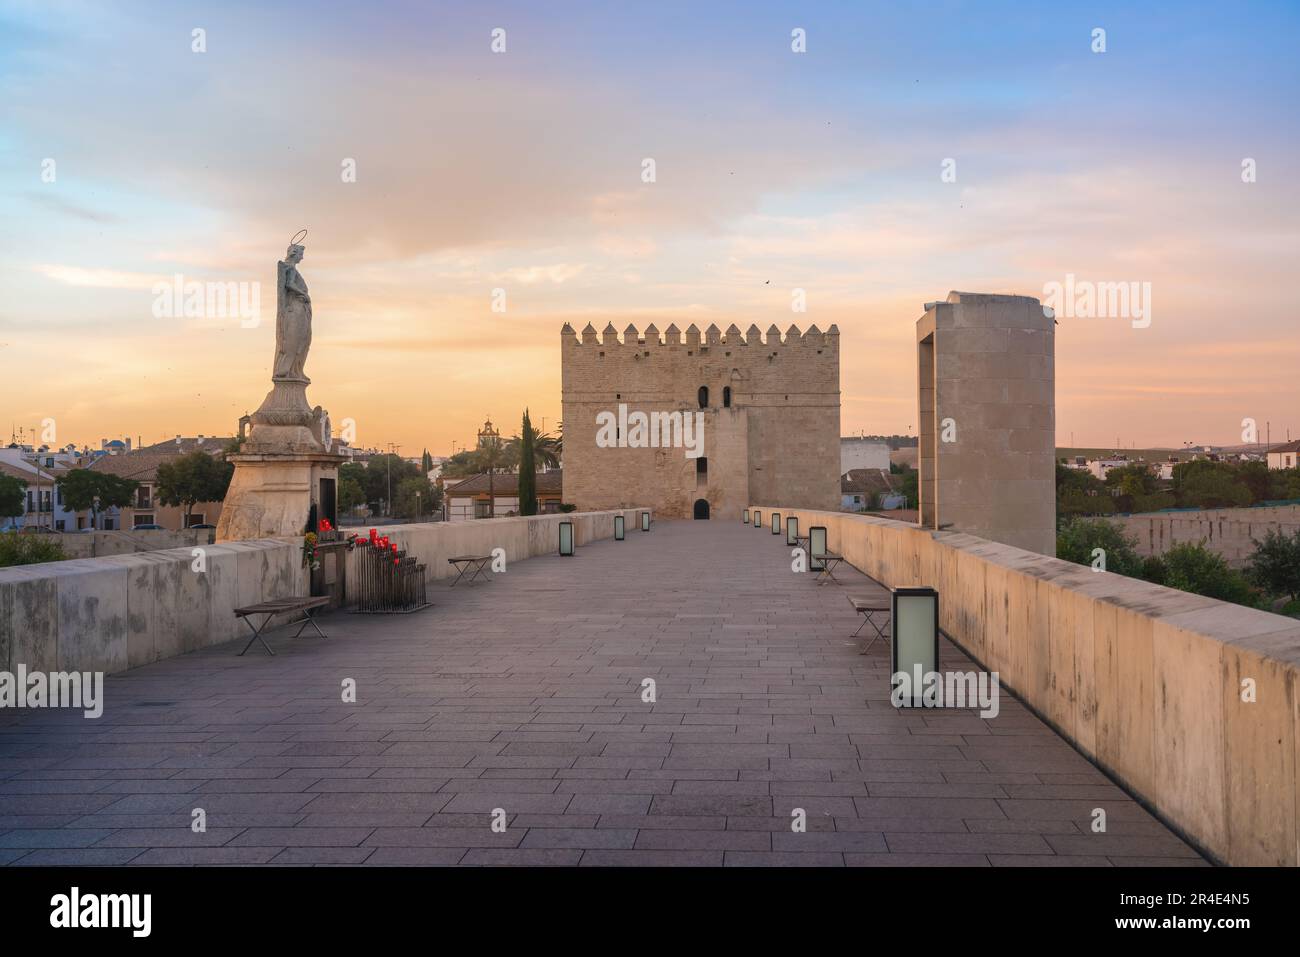 Römische Brücke von Cordoba bei Sonnenaufgang mit San Rafael Statue und Calahorra Tower - Cordoba, Andalusien, Spanien Stockfoto